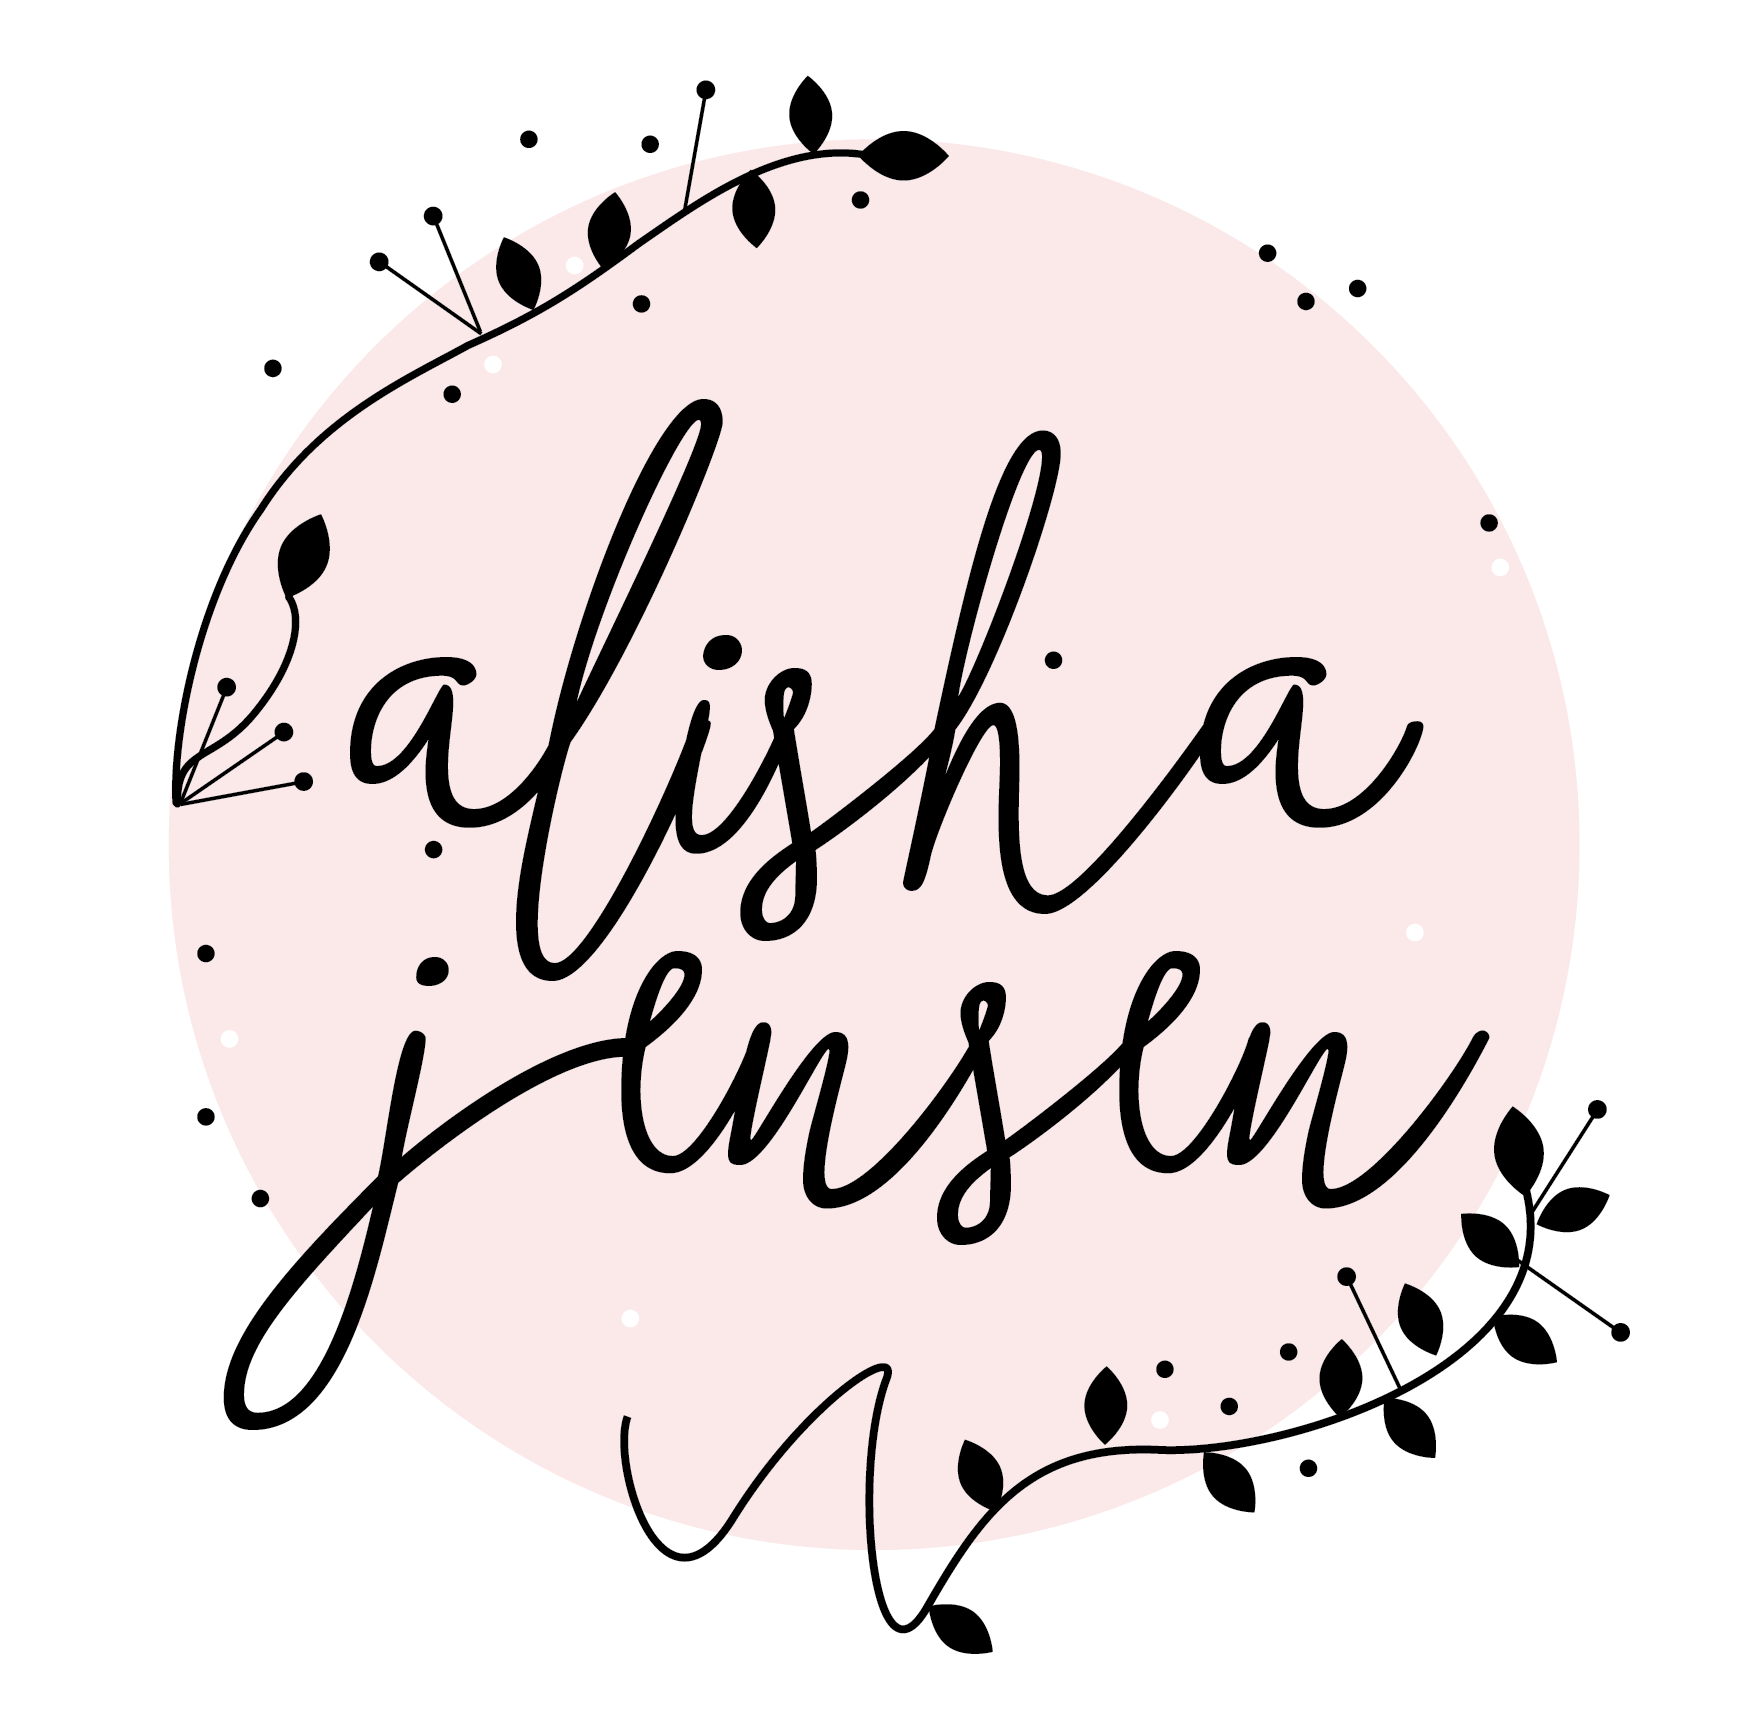 Alisha Jensen